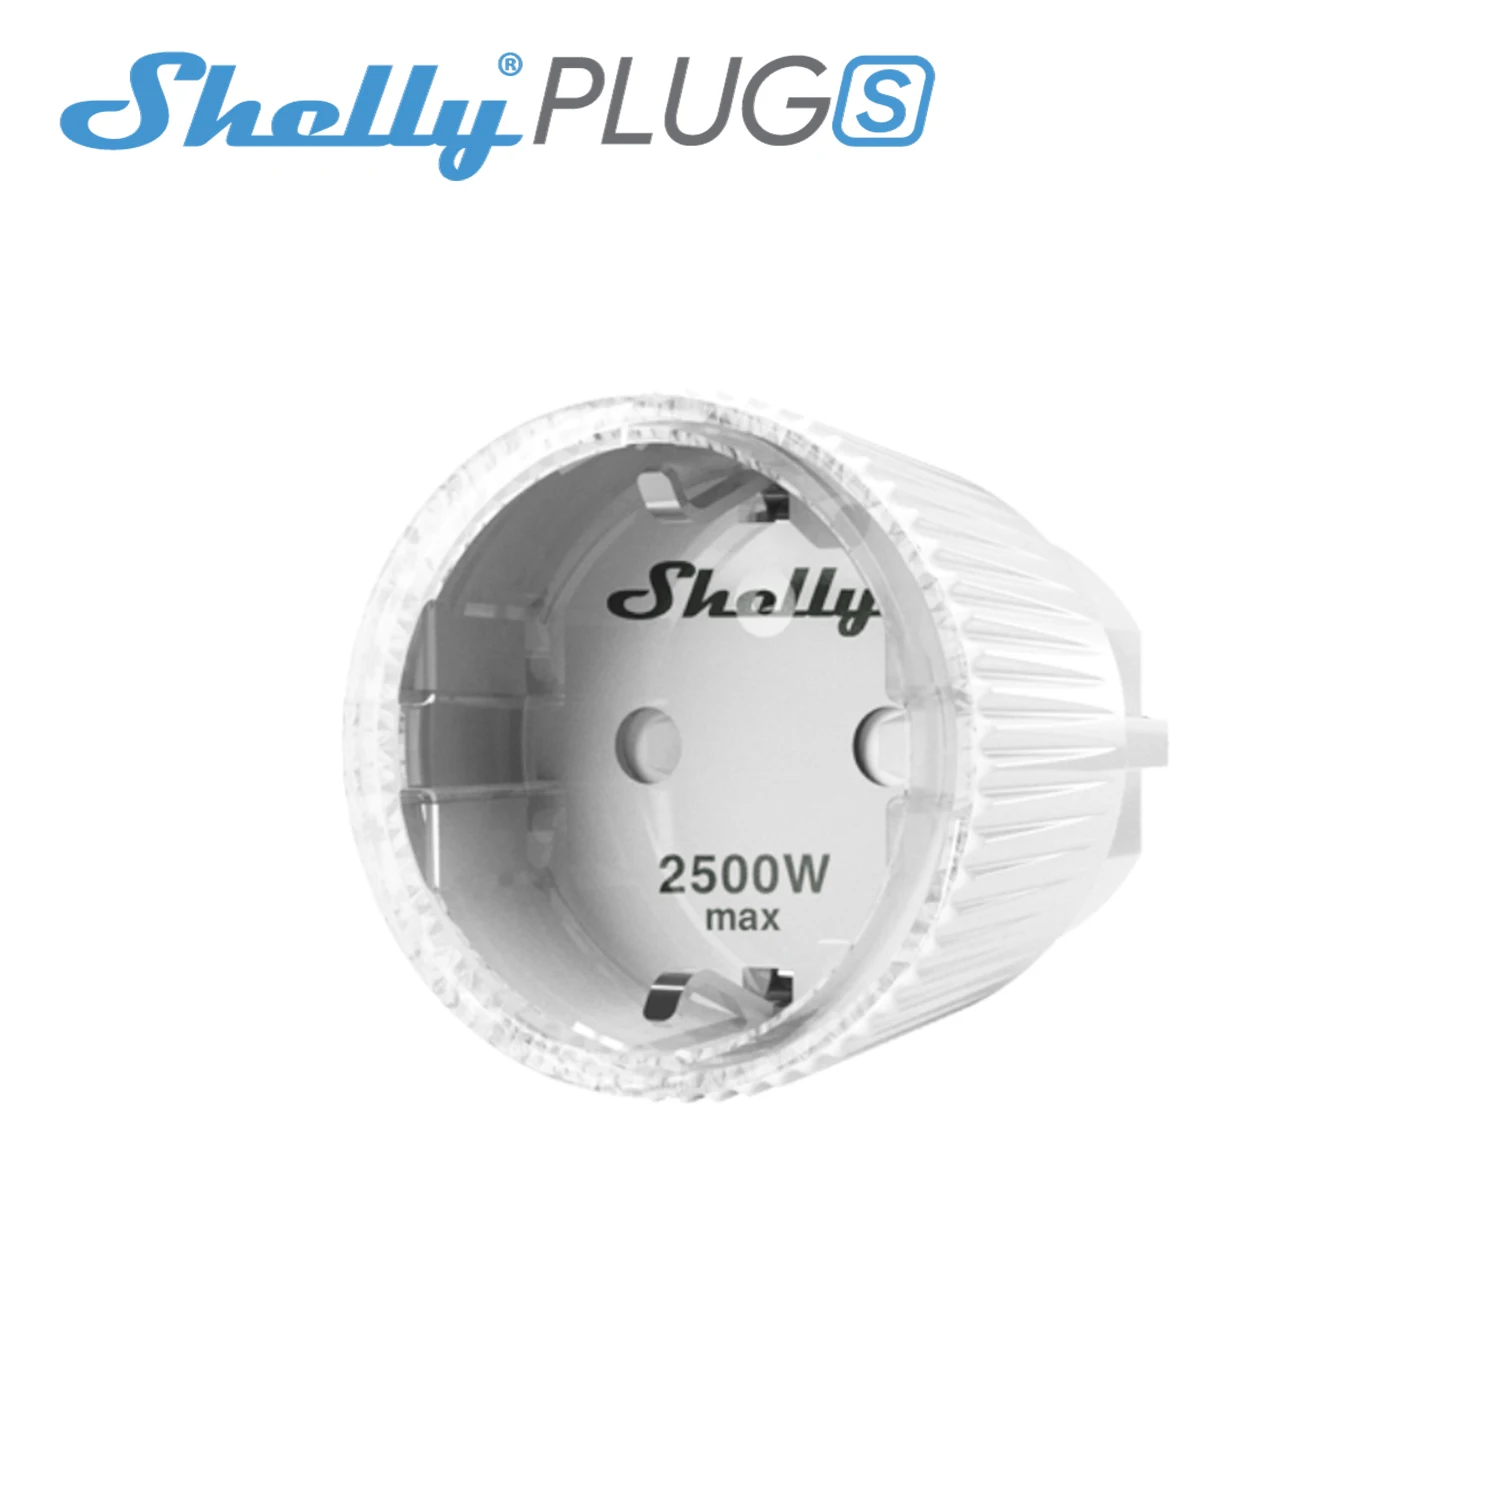 Shelly Plug Wi-Fi Wireless socket adapter